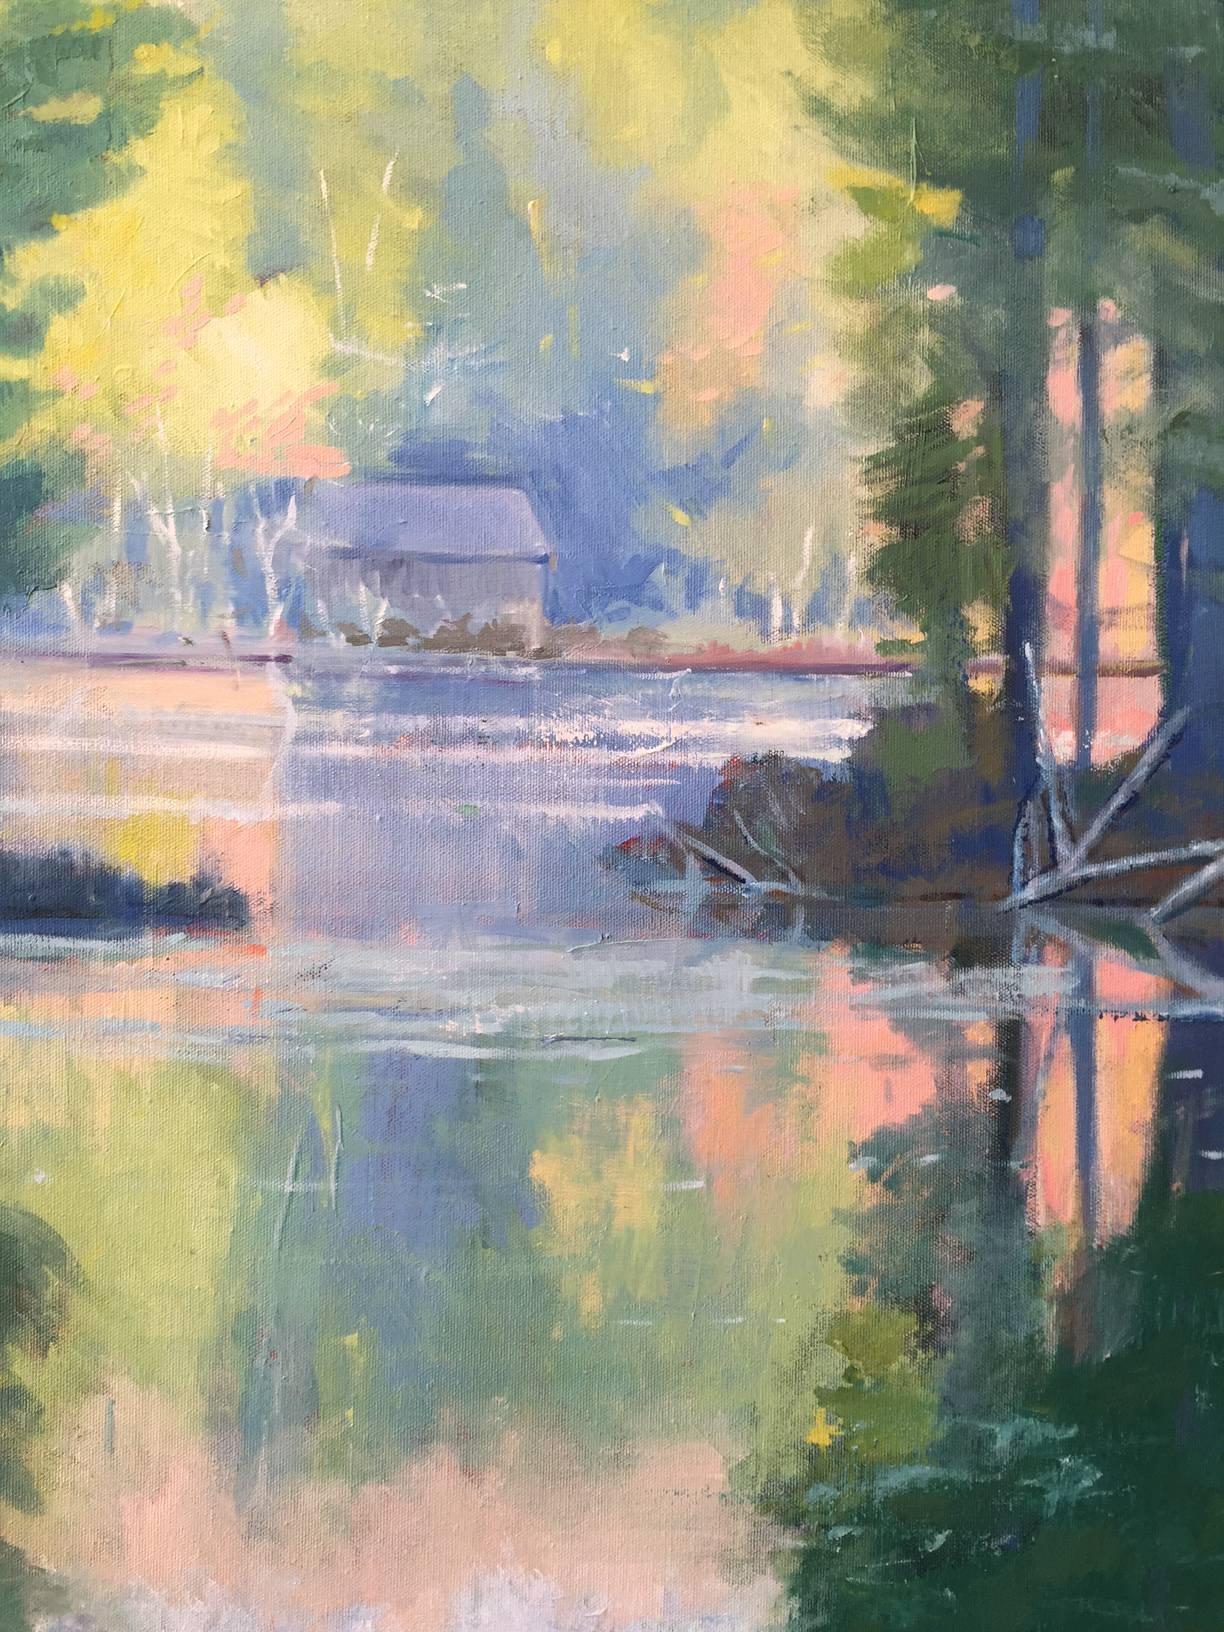 Lowell Lake, Vermont - Painting by Miranda Girard